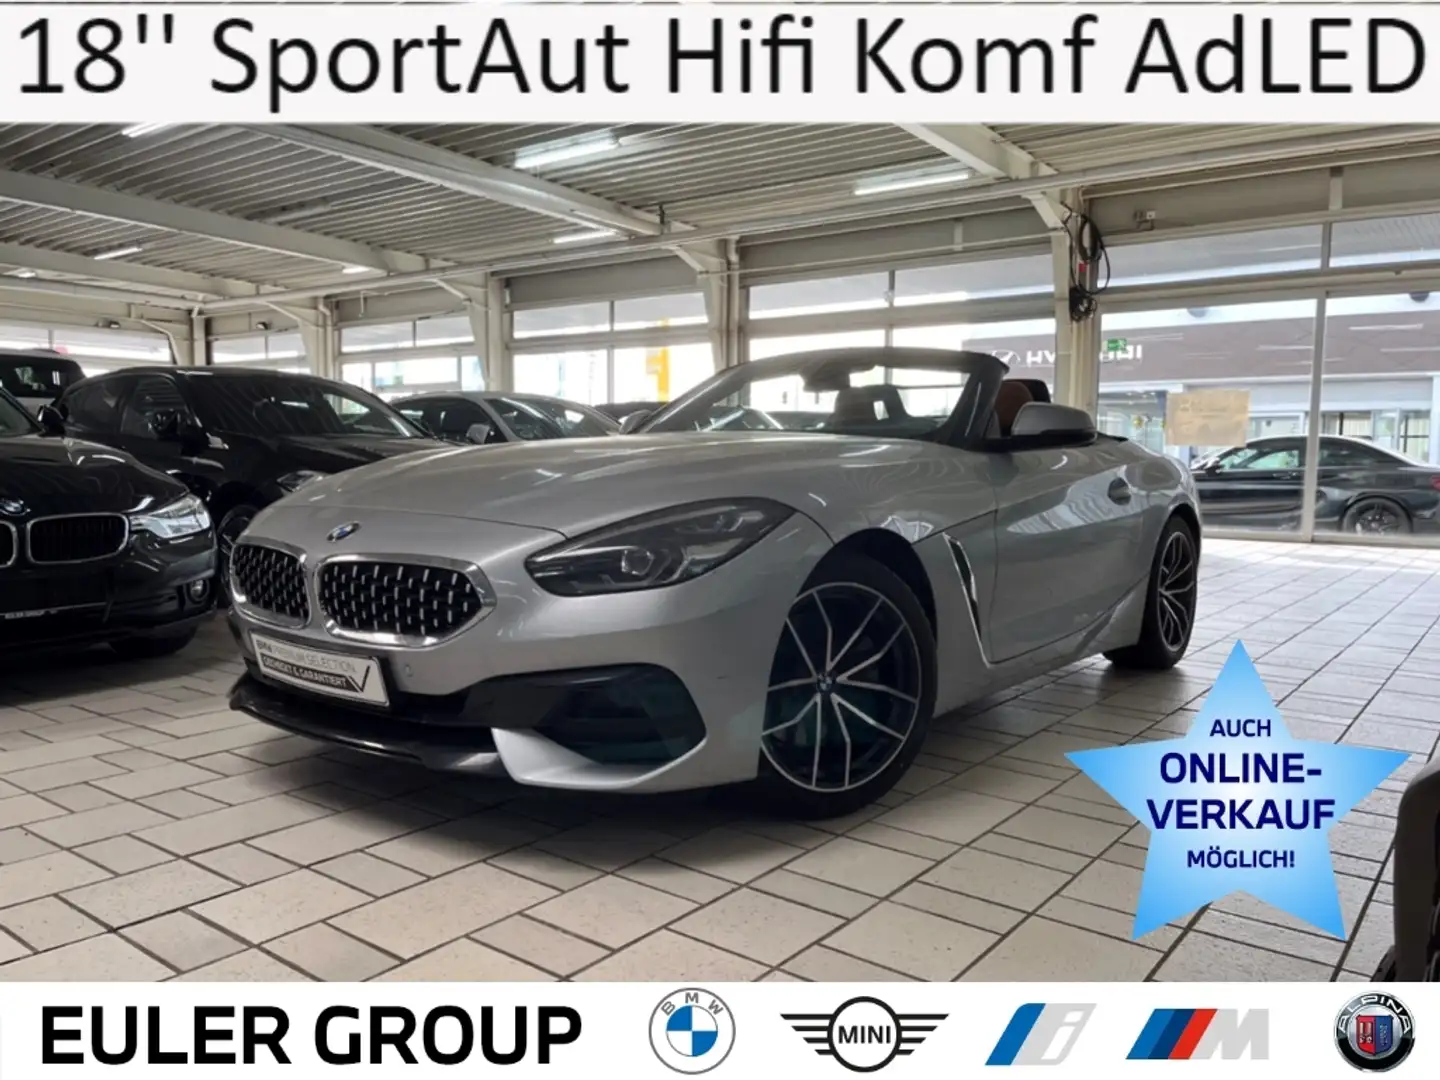 BMW Z4 20i Sport Line 18'' SportAut Hifi Leder Komf AdLED Silber - 1